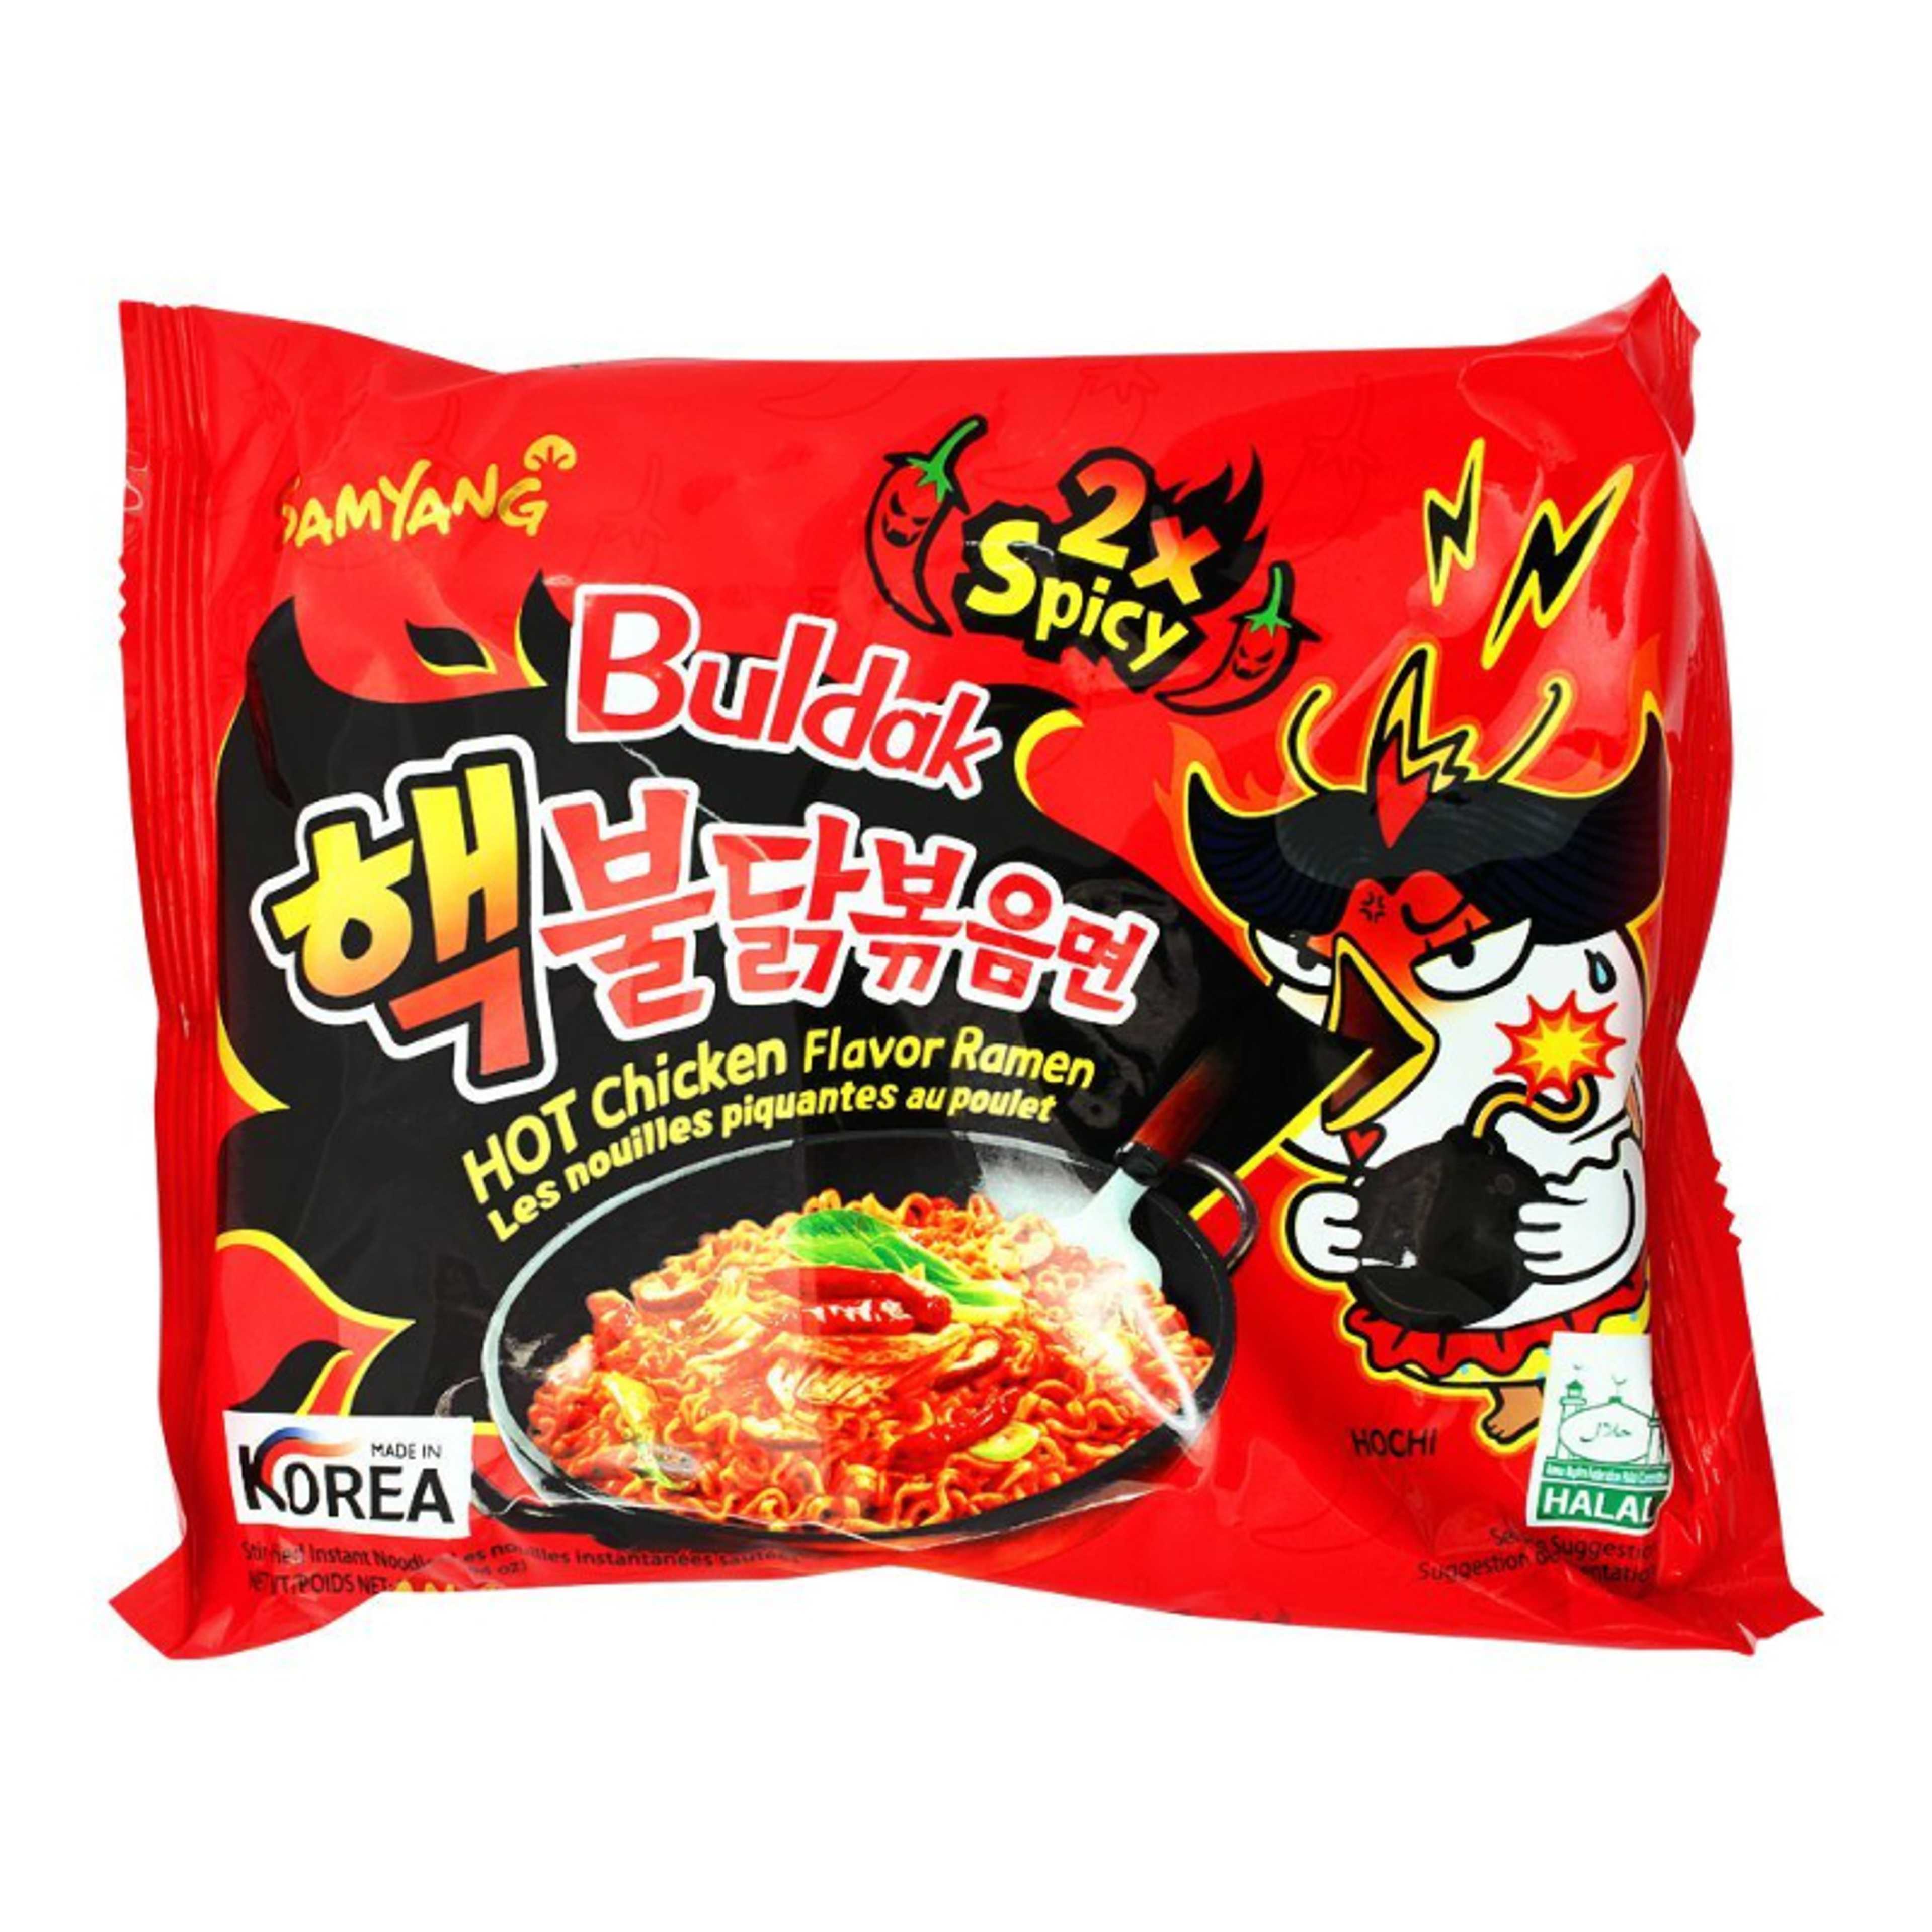 Samyangs Noodles 2X Spicy Hot Chicken Flavor Ramen 140gm